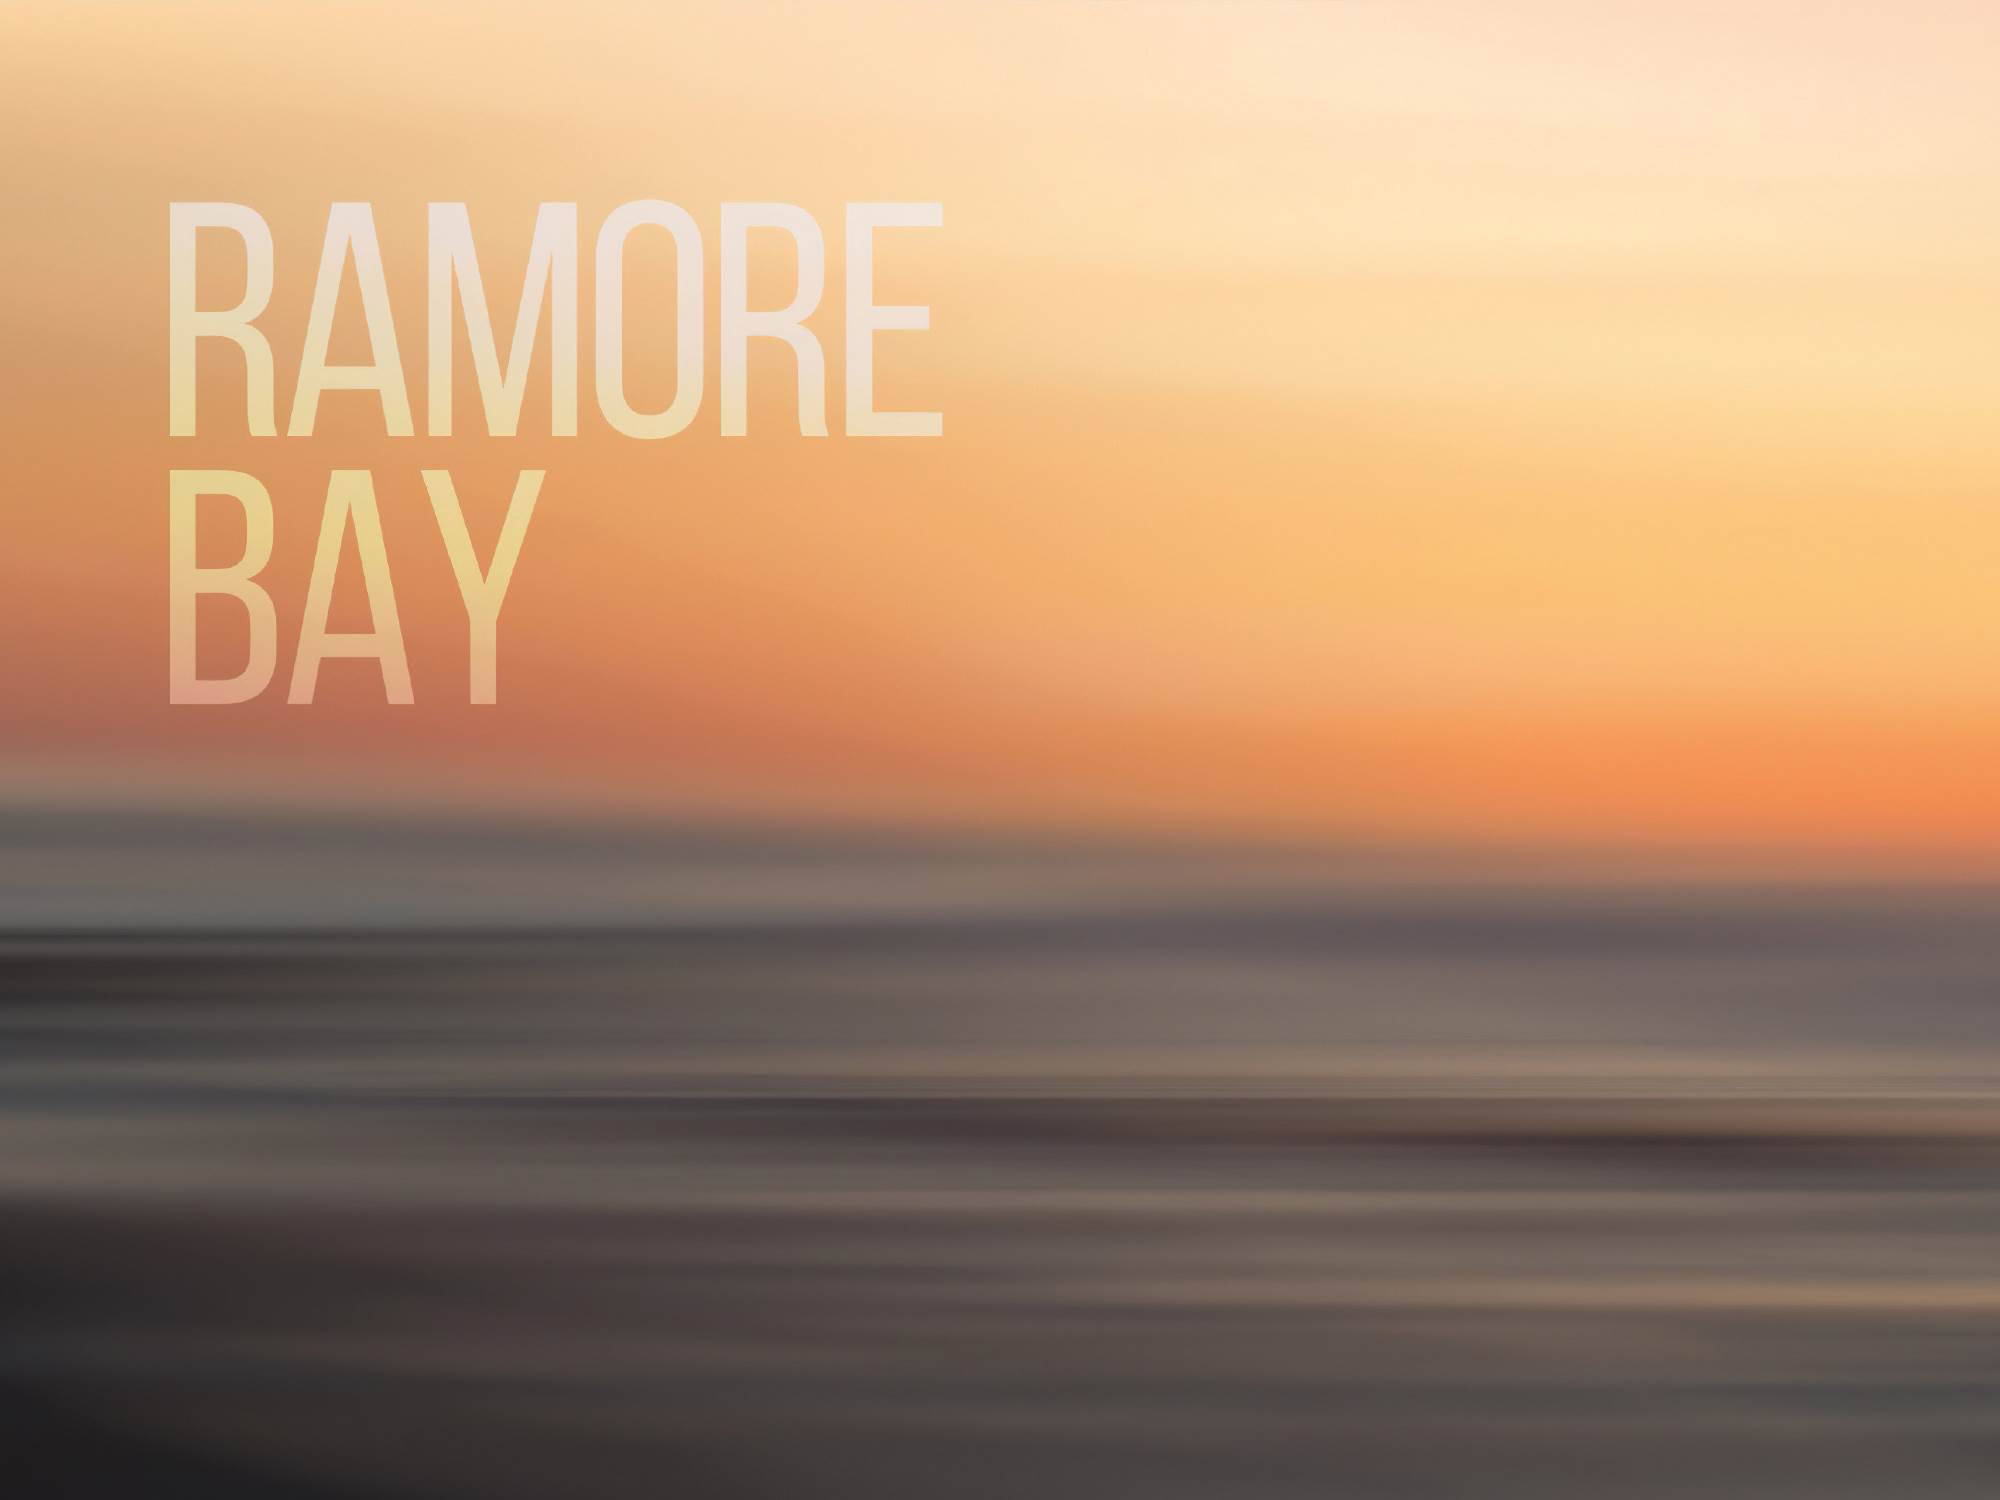 5 Ramore Bay